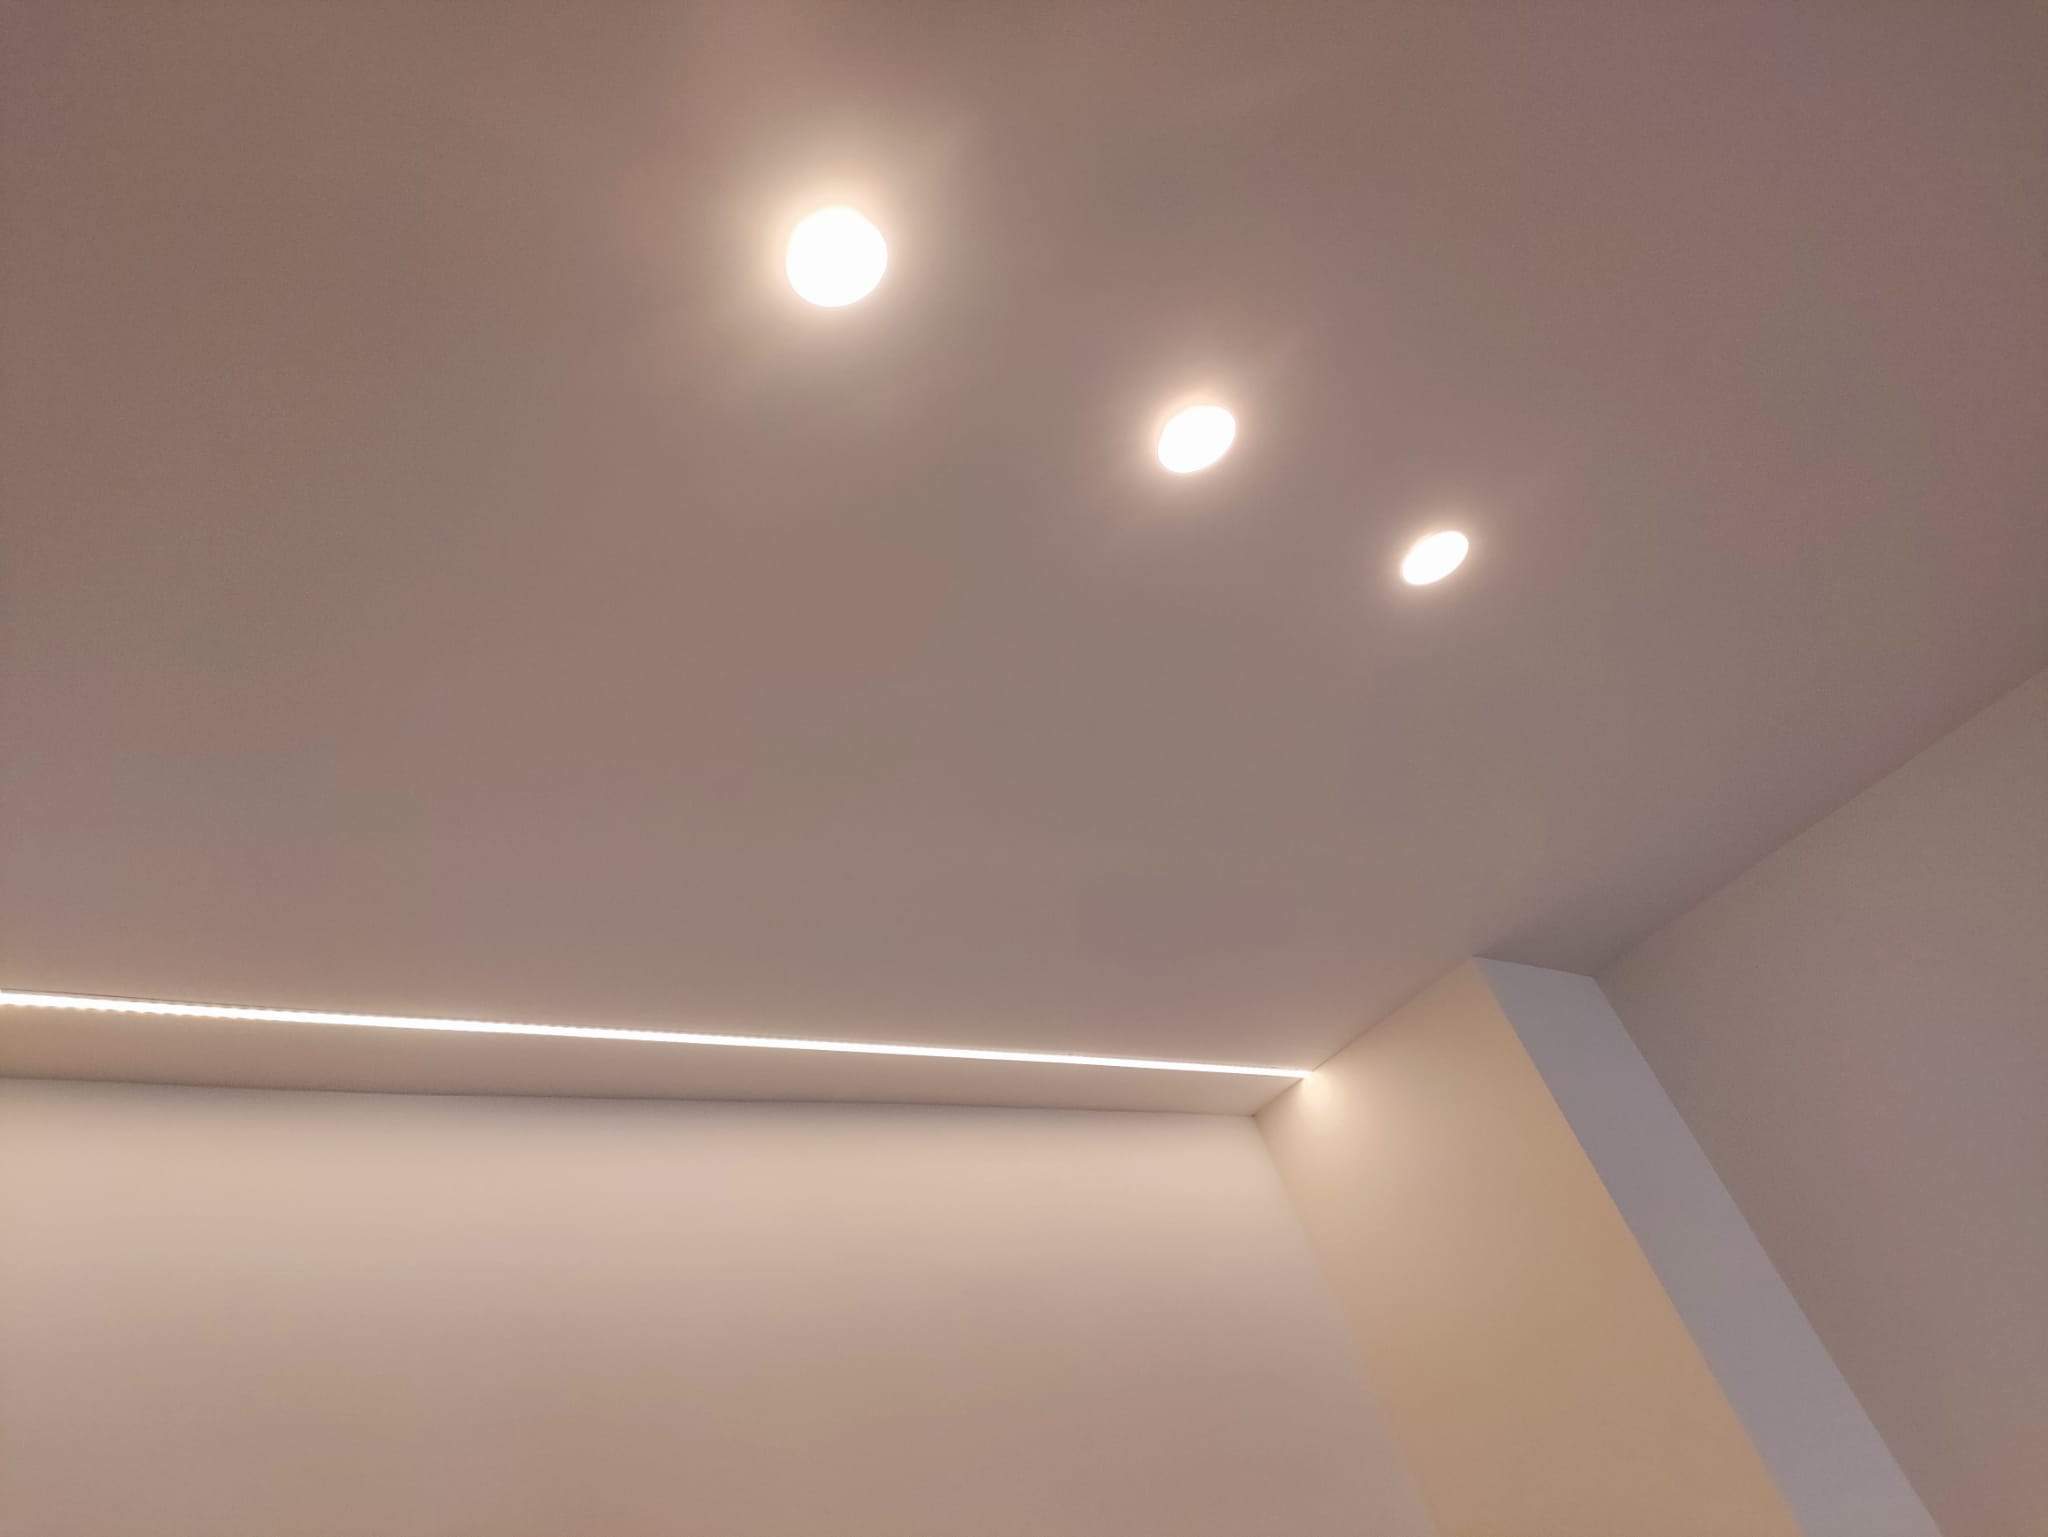 Realizamos instalación de tira LED empotrada en el techo de pladur